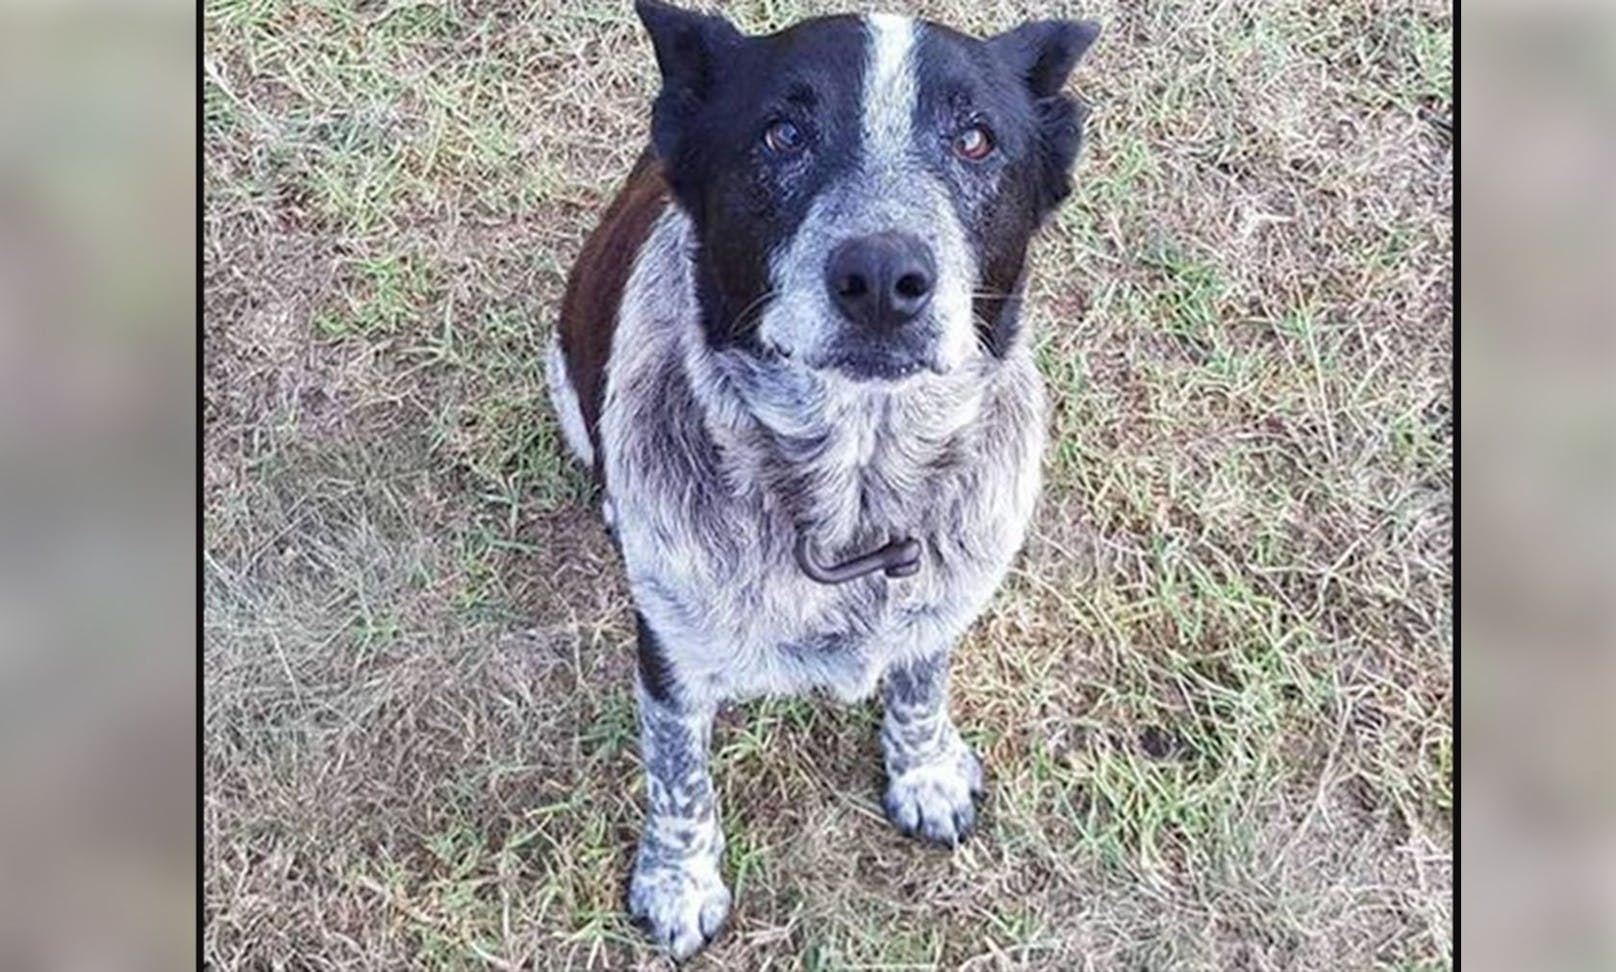 Der australische Cattle-Dog "Max" fand trotz hohem Alter und Blindheit sein dreijähriges Frauchen in Australien wieder.&nbsp; ---&gt; <a href="https://www.heute.at/s/17-jaehriger-hund-findet-dreijaehriges-maedchen-100120862">ARTIKEL </a>